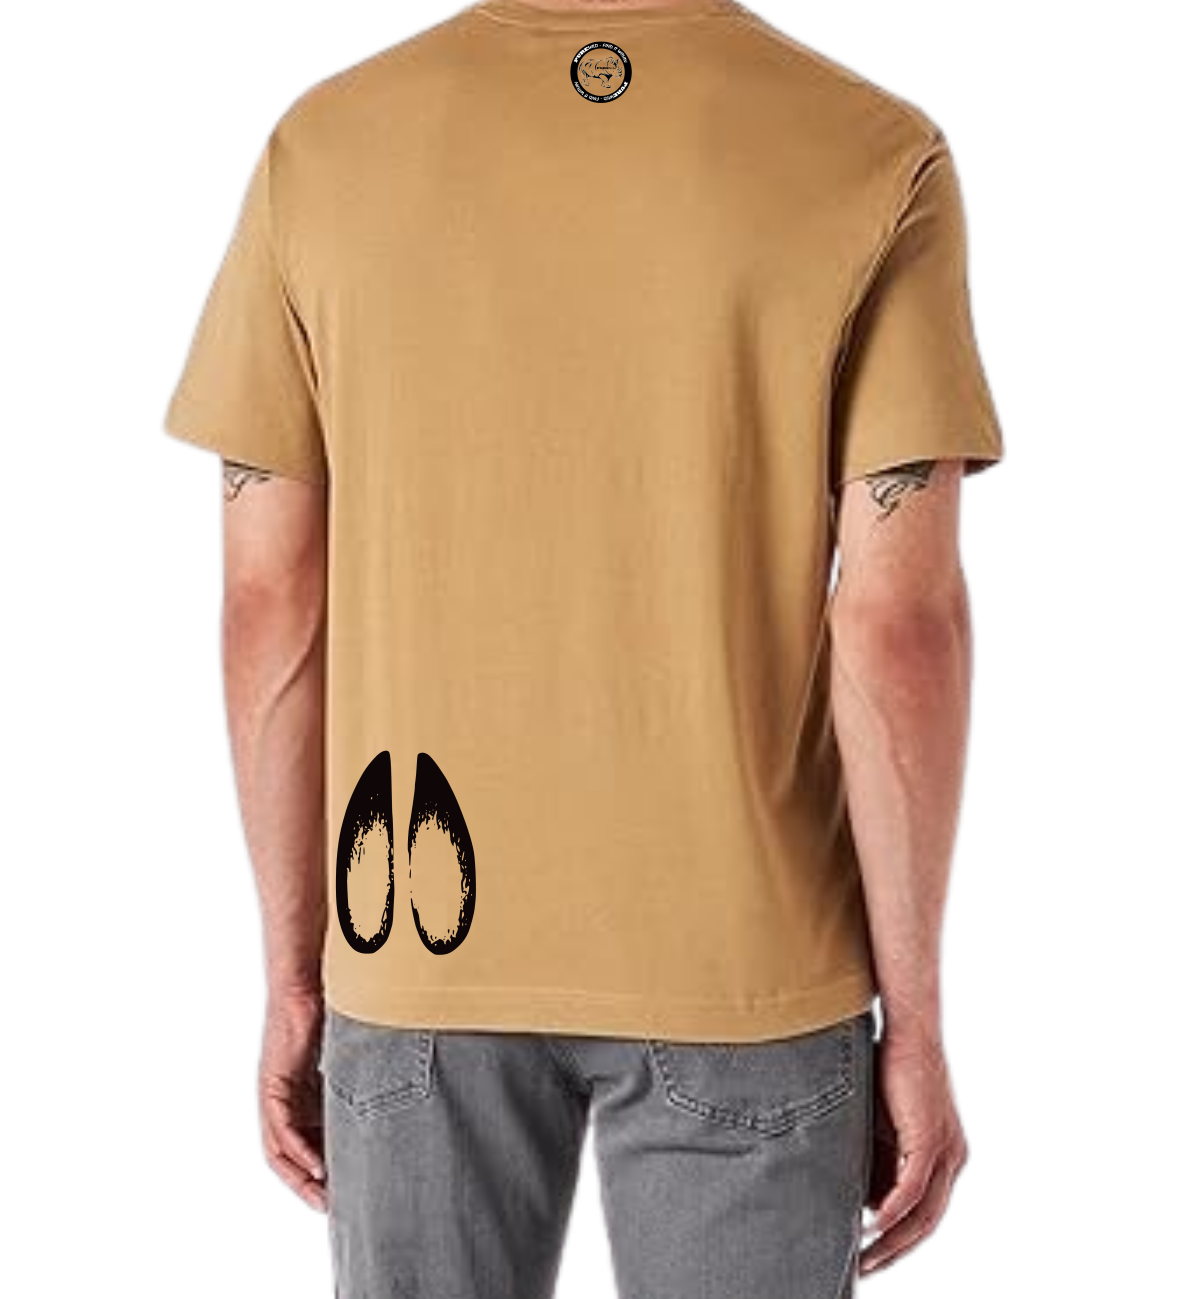 Nyala T-Shirt For A Real Man